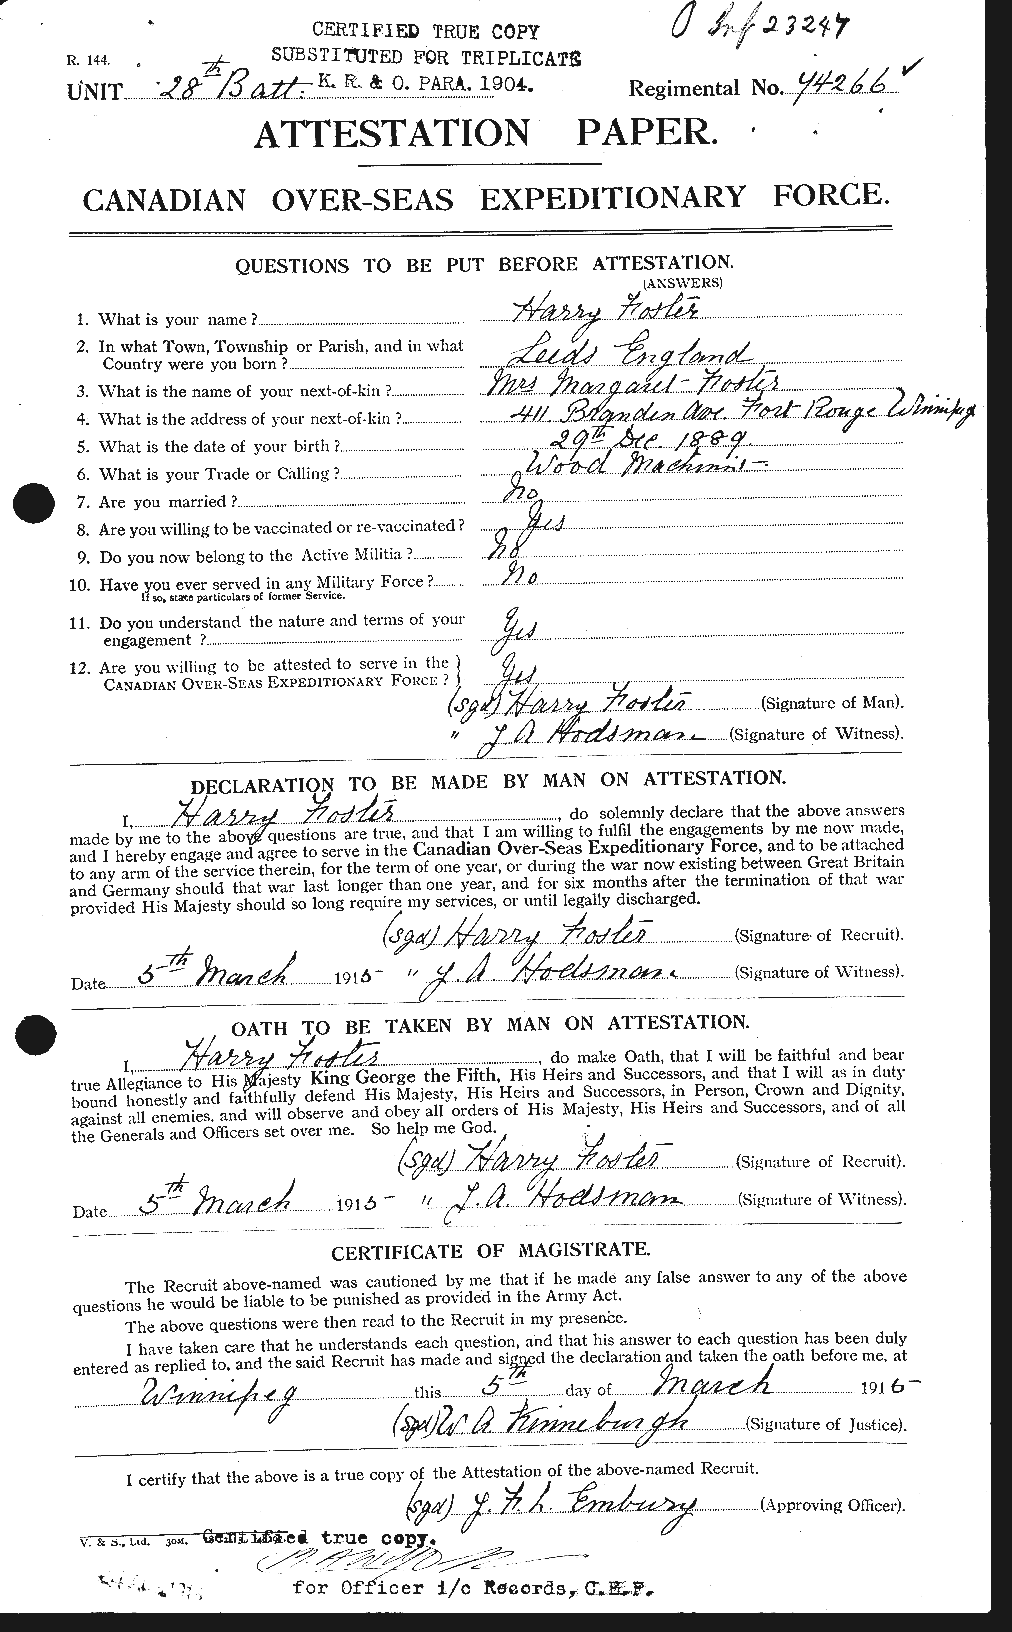 Dossiers du Personnel de la Première Guerre mondiale - CEC 330741a